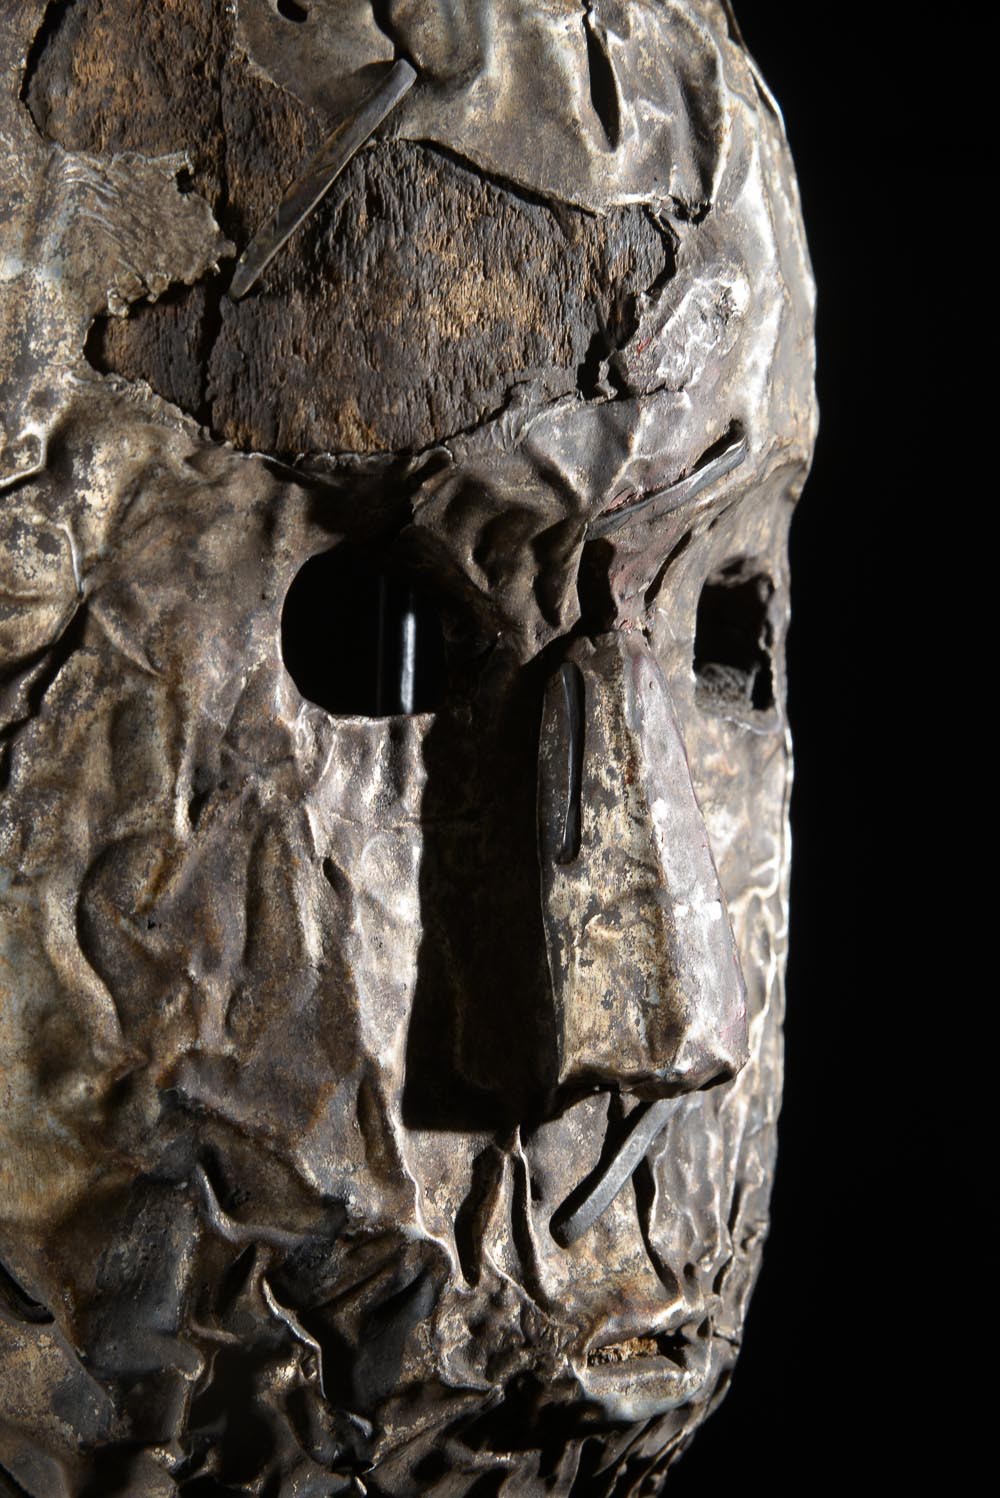 Masque en métal ngongo munene - Ding Tukongo - RDC Zaire